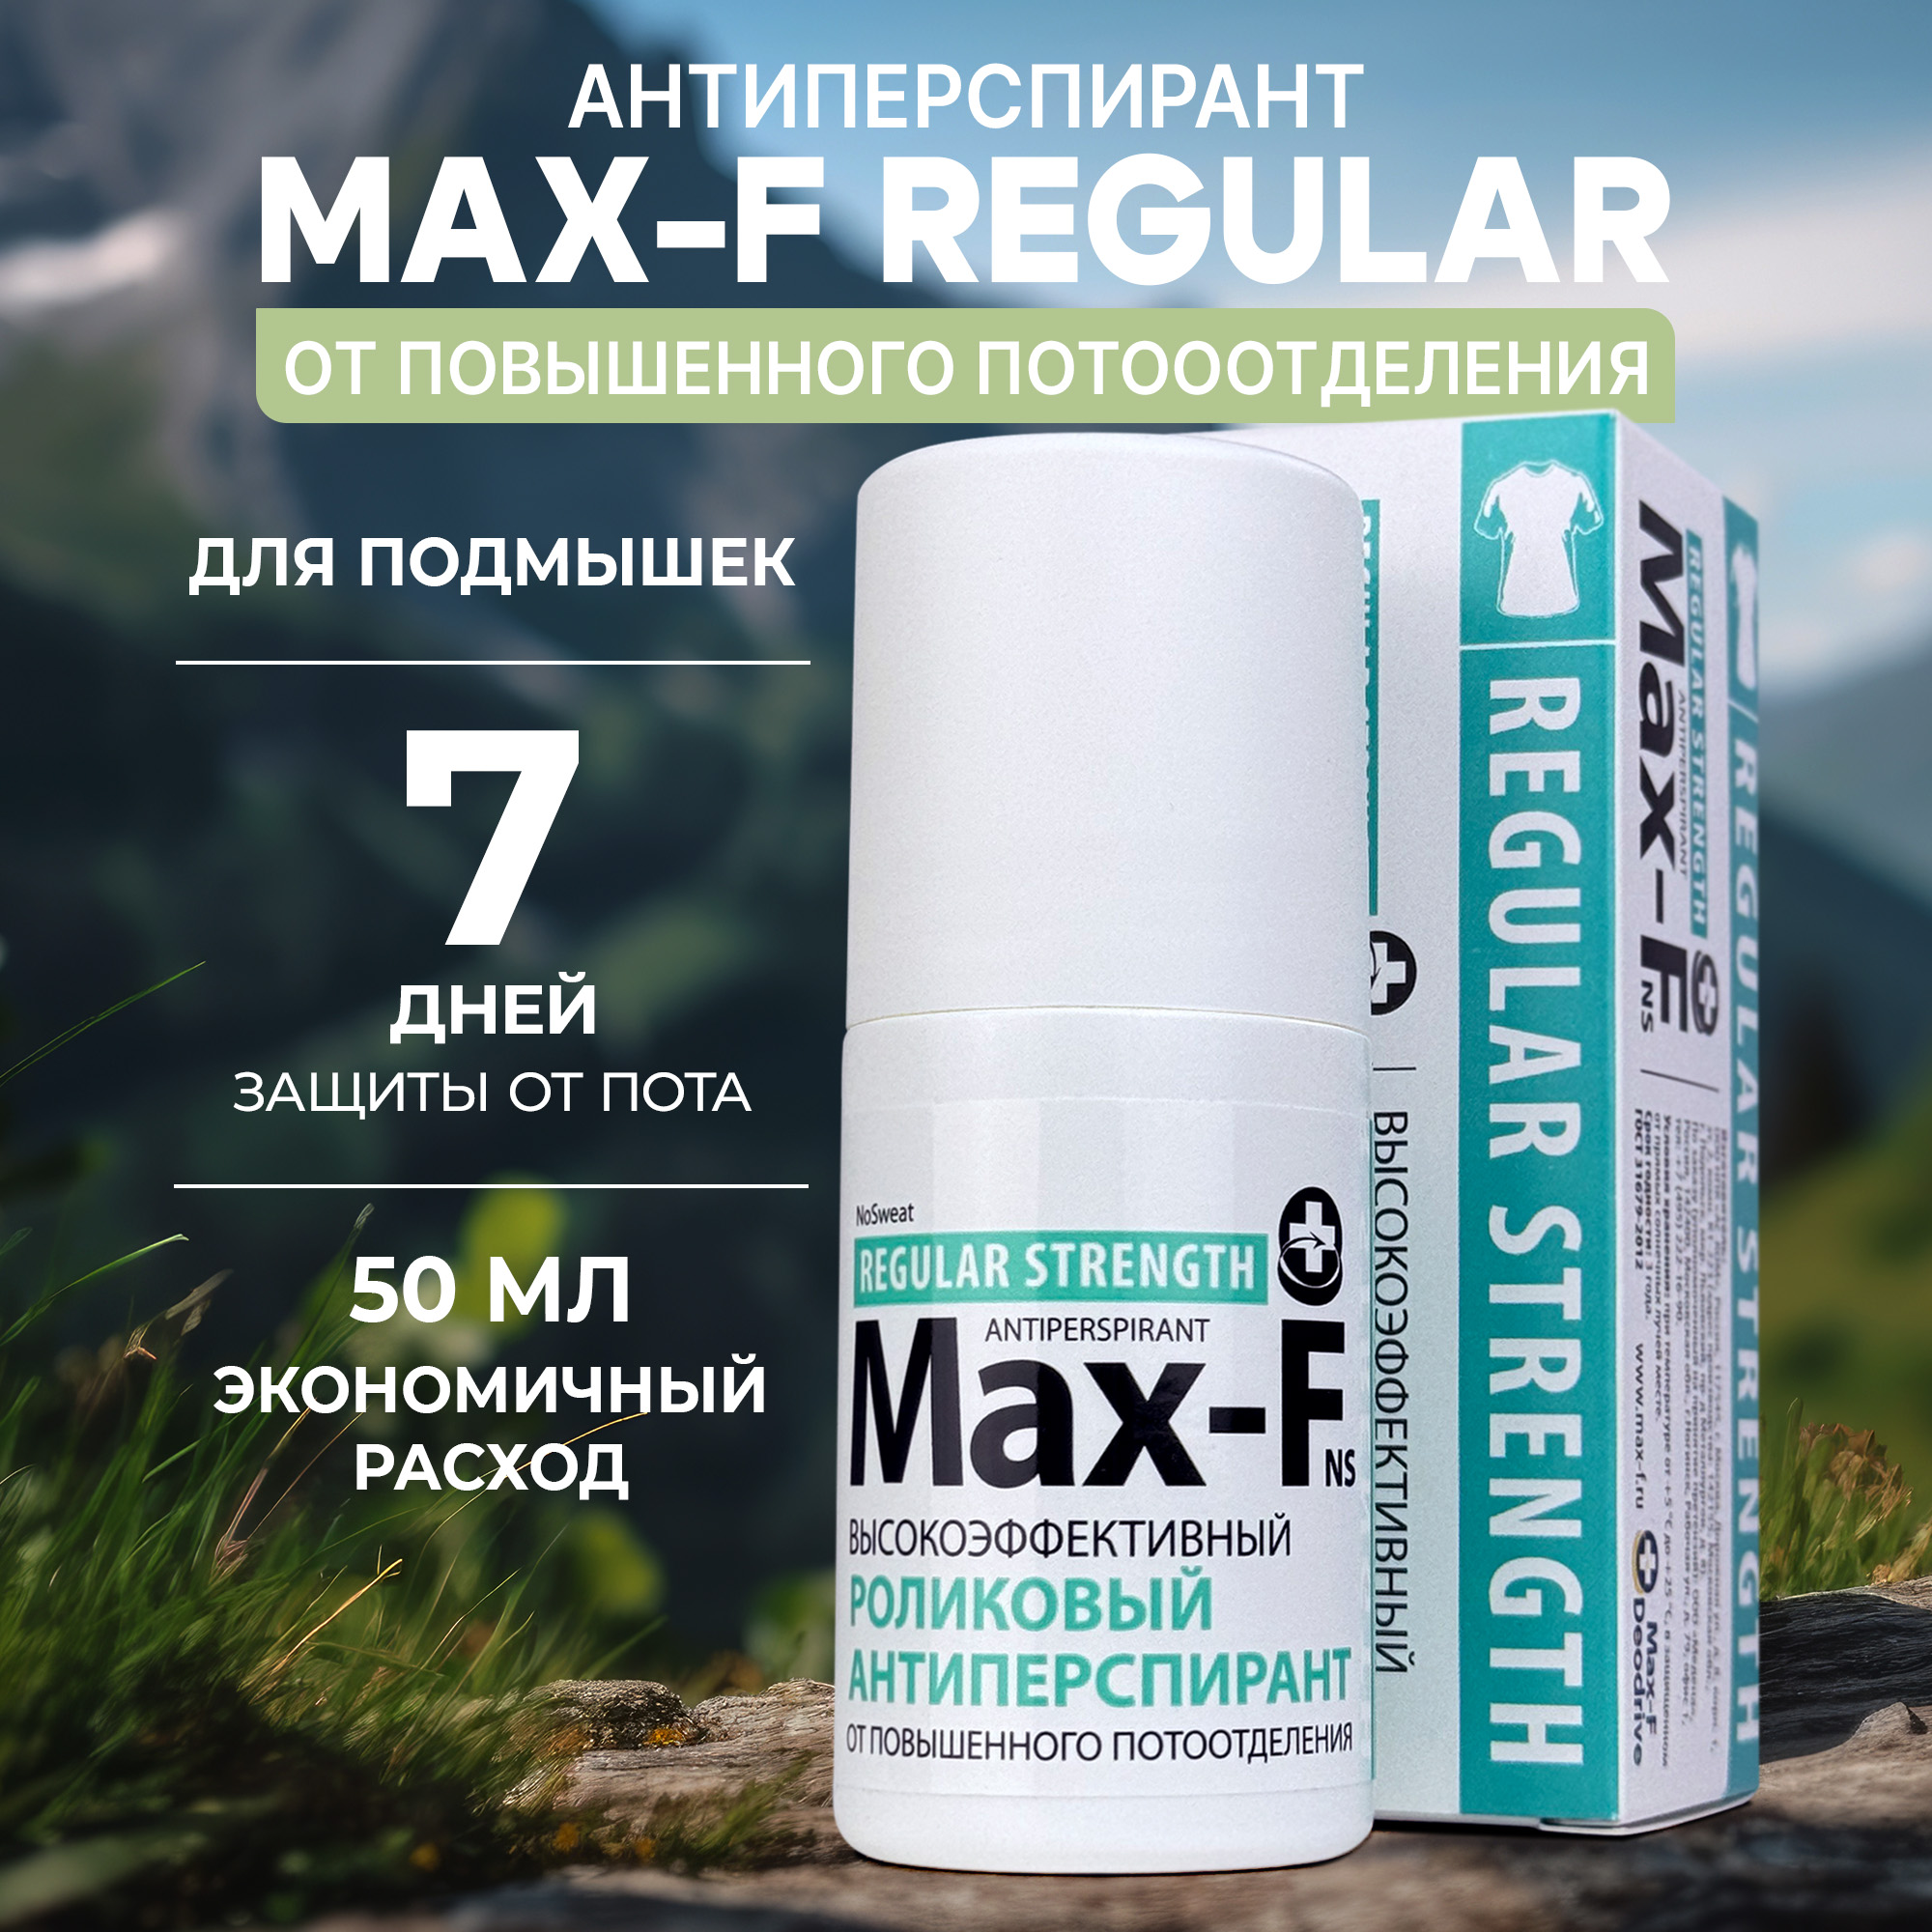 Антиперспирант Max-F NoSweat 15% от пота и запаха для подмышек algel антиперспирант от избыточного потоотделения и неприятного запаха 50